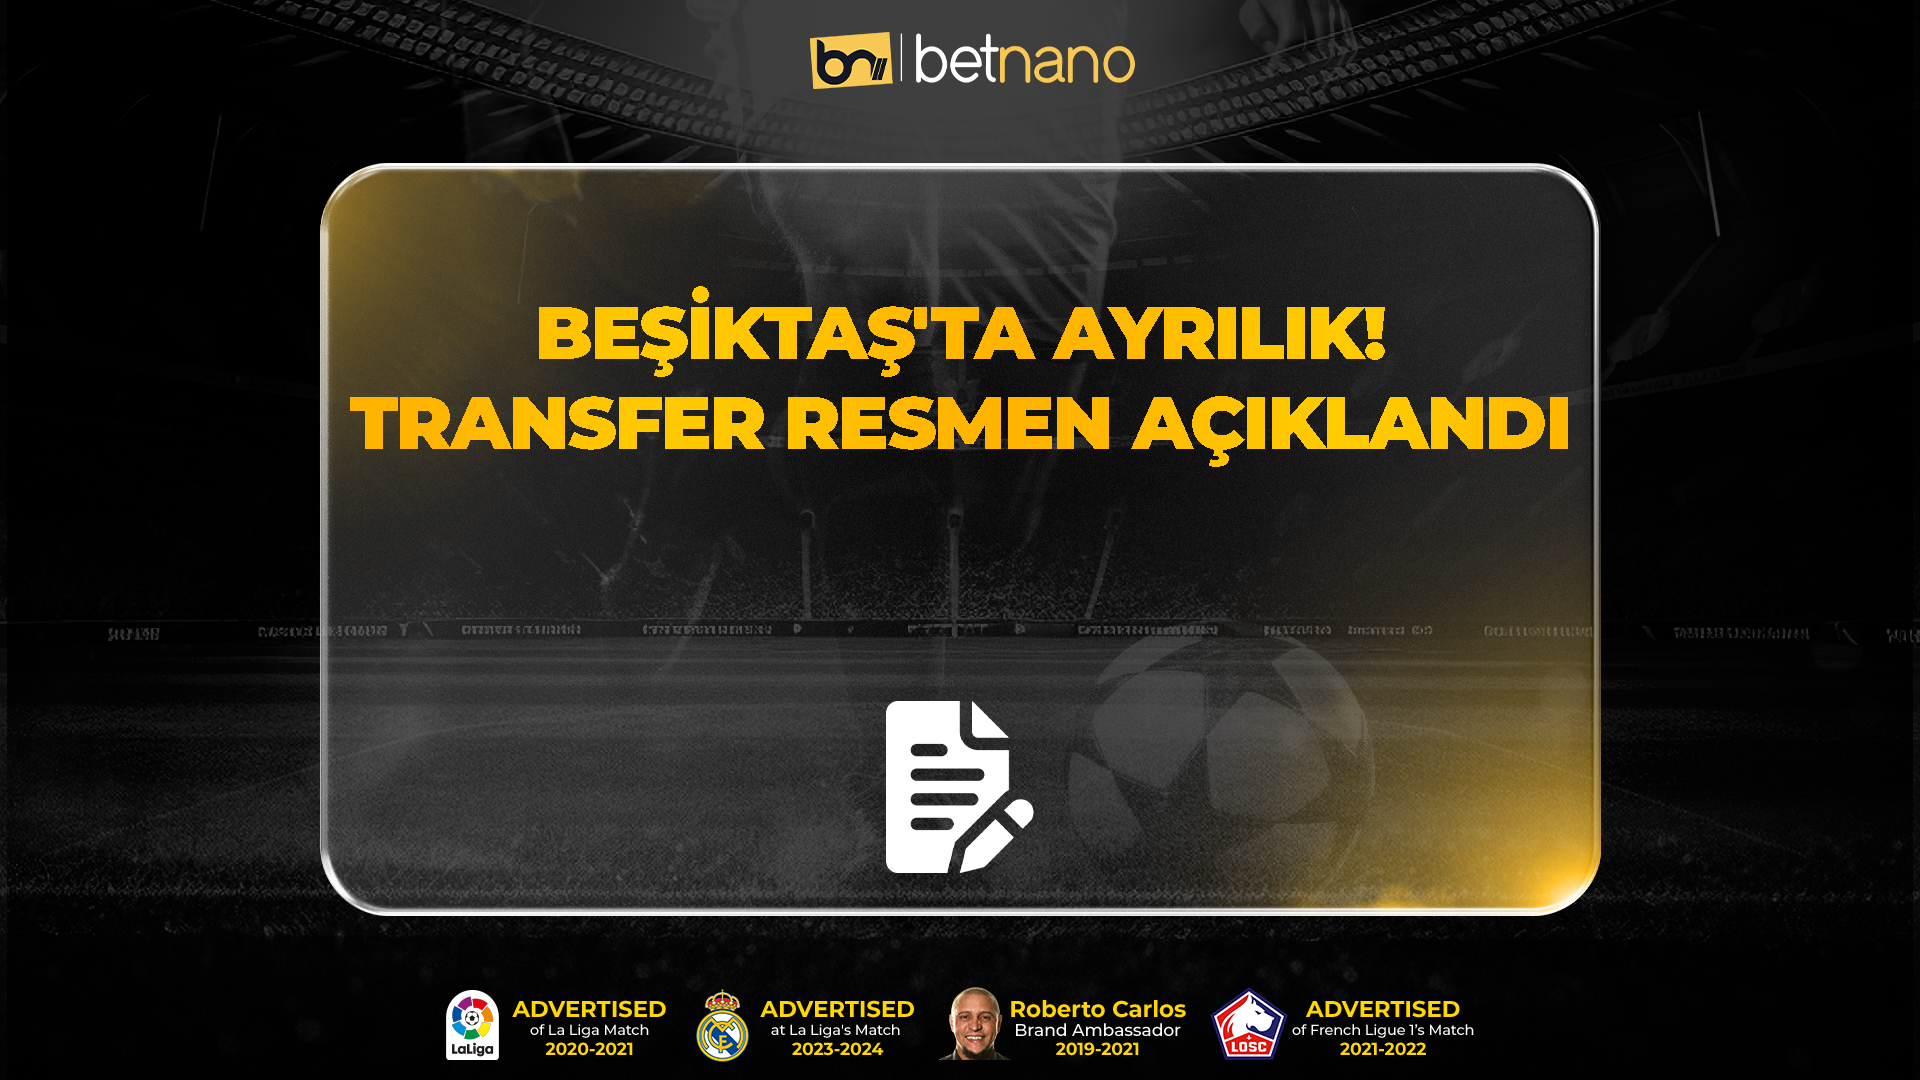 Beşiktaş'ta ayrılık! Transfer resmen açıklandı